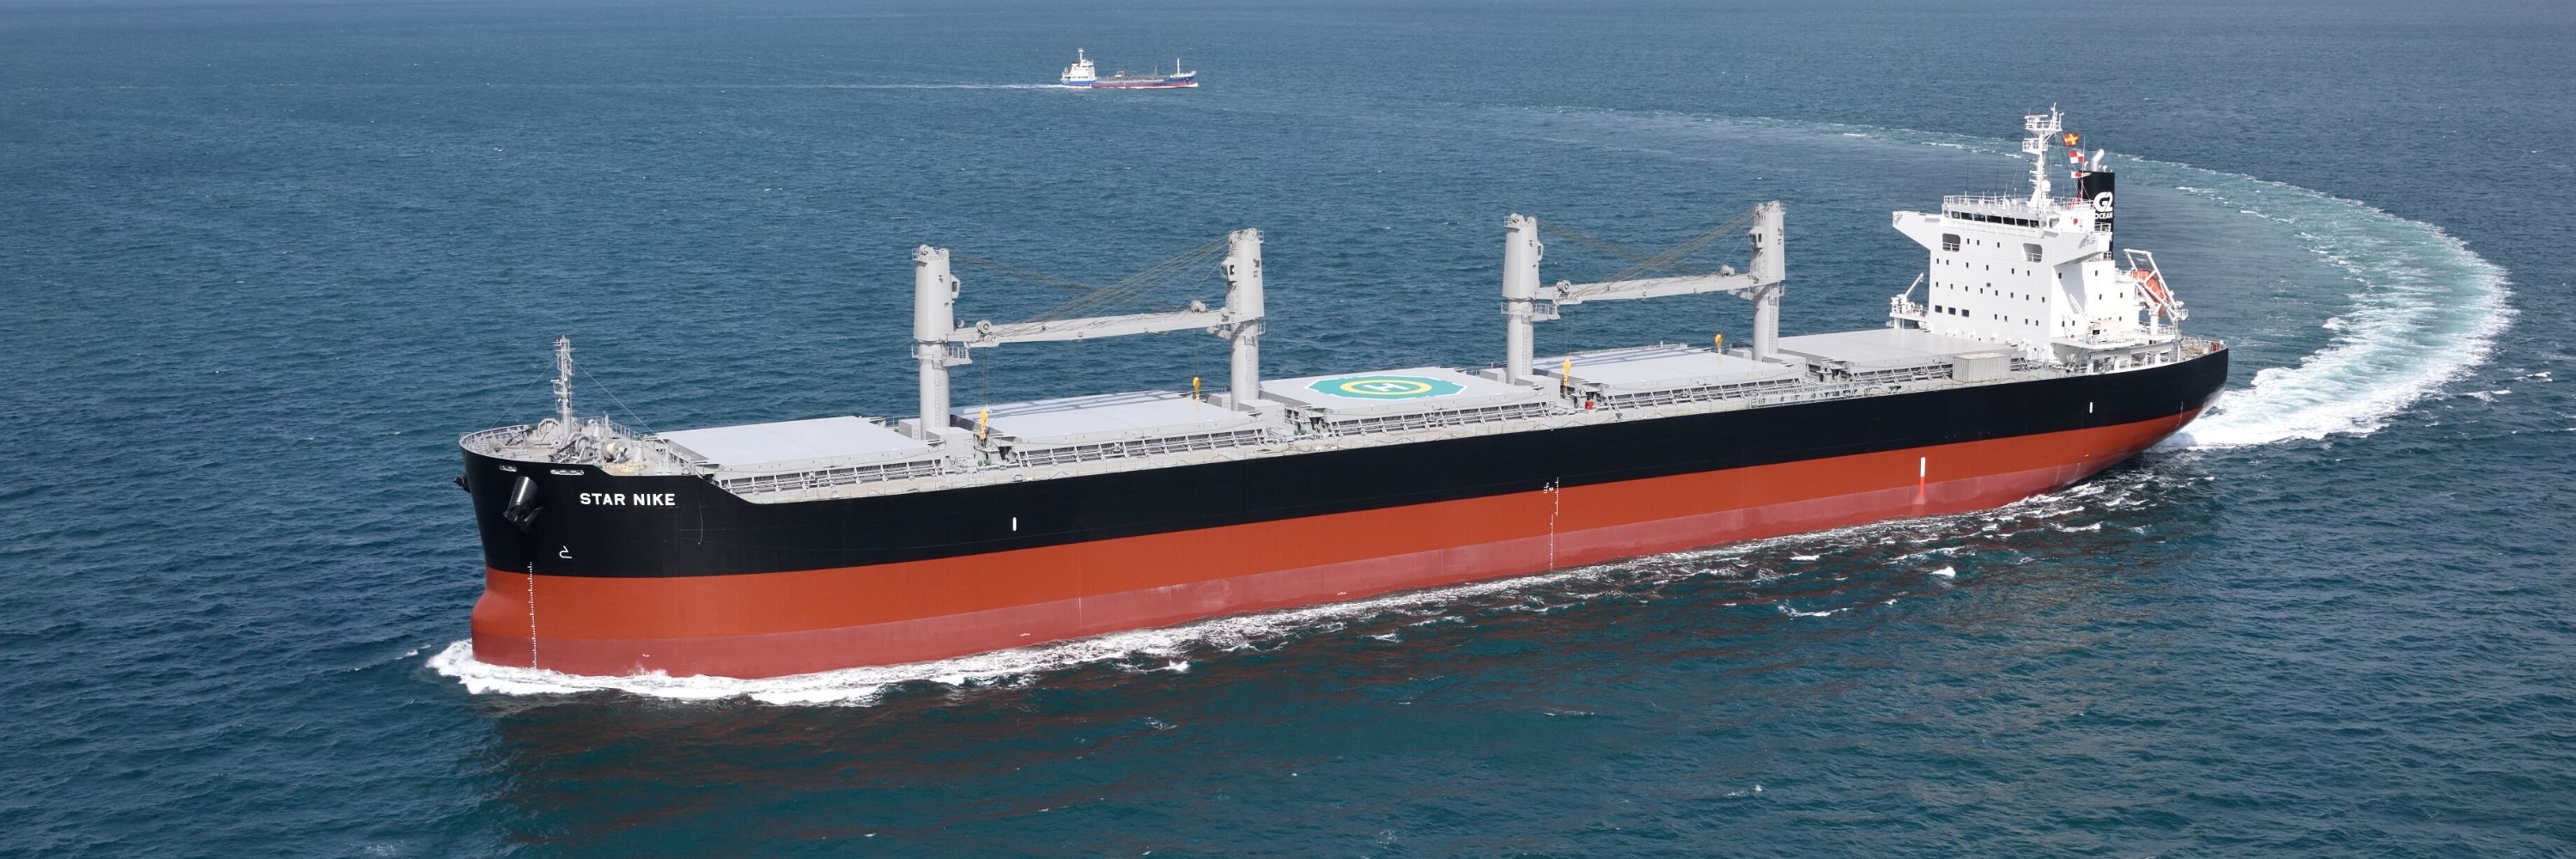 G2 Ocean strengthens fleet with a new bulk carrier